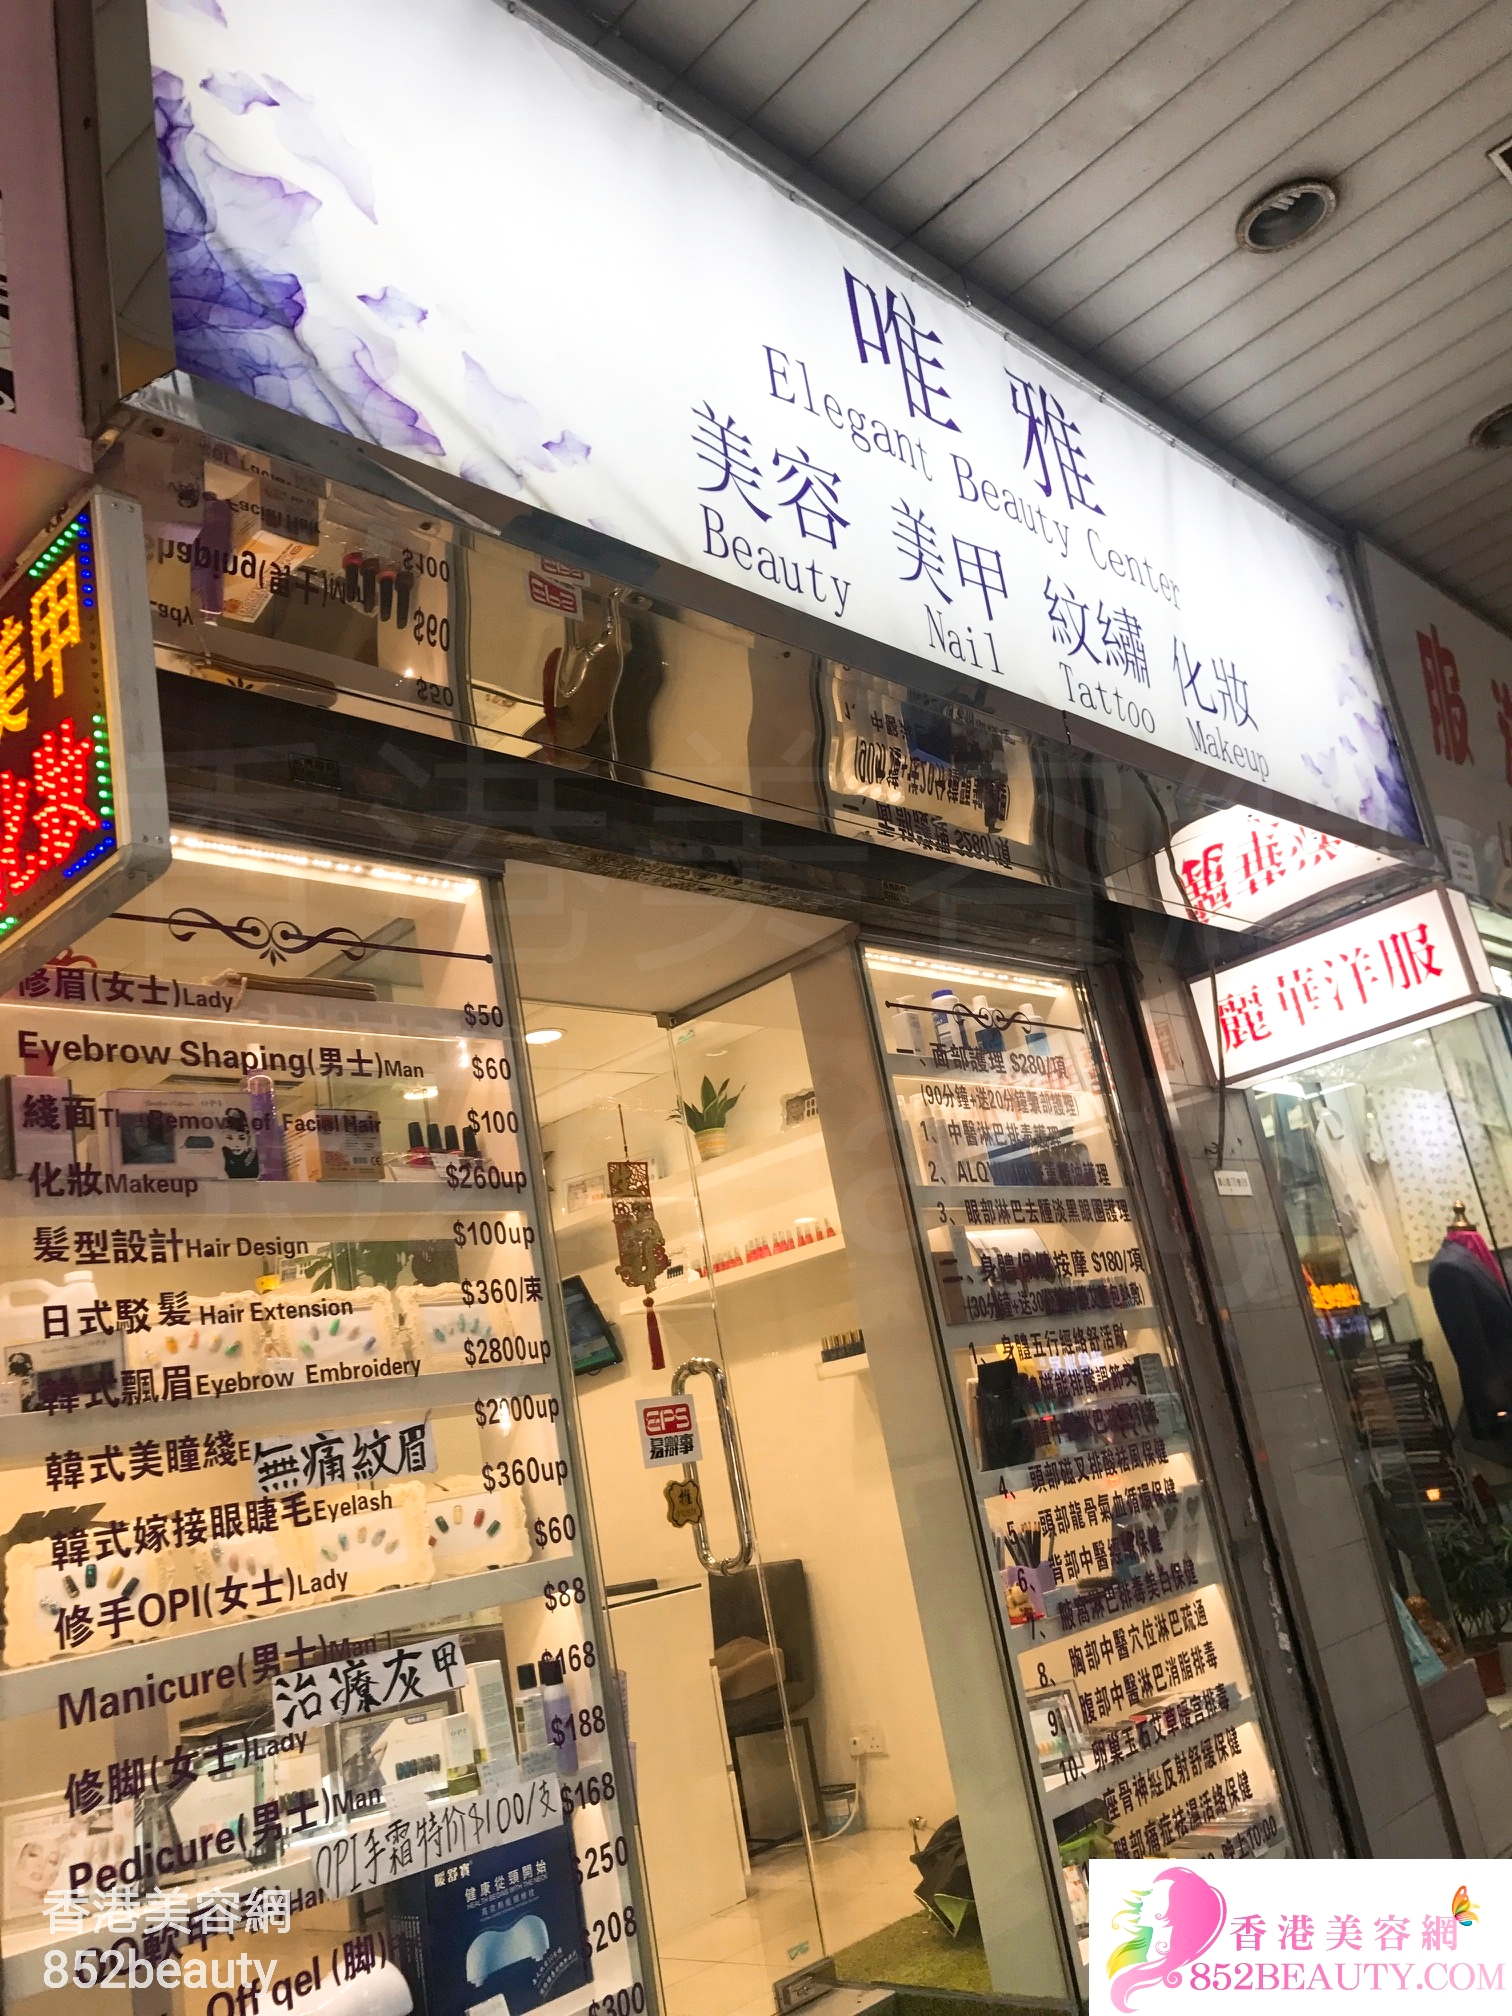 Eye Care: 唯雅 Elegant Beauty Center